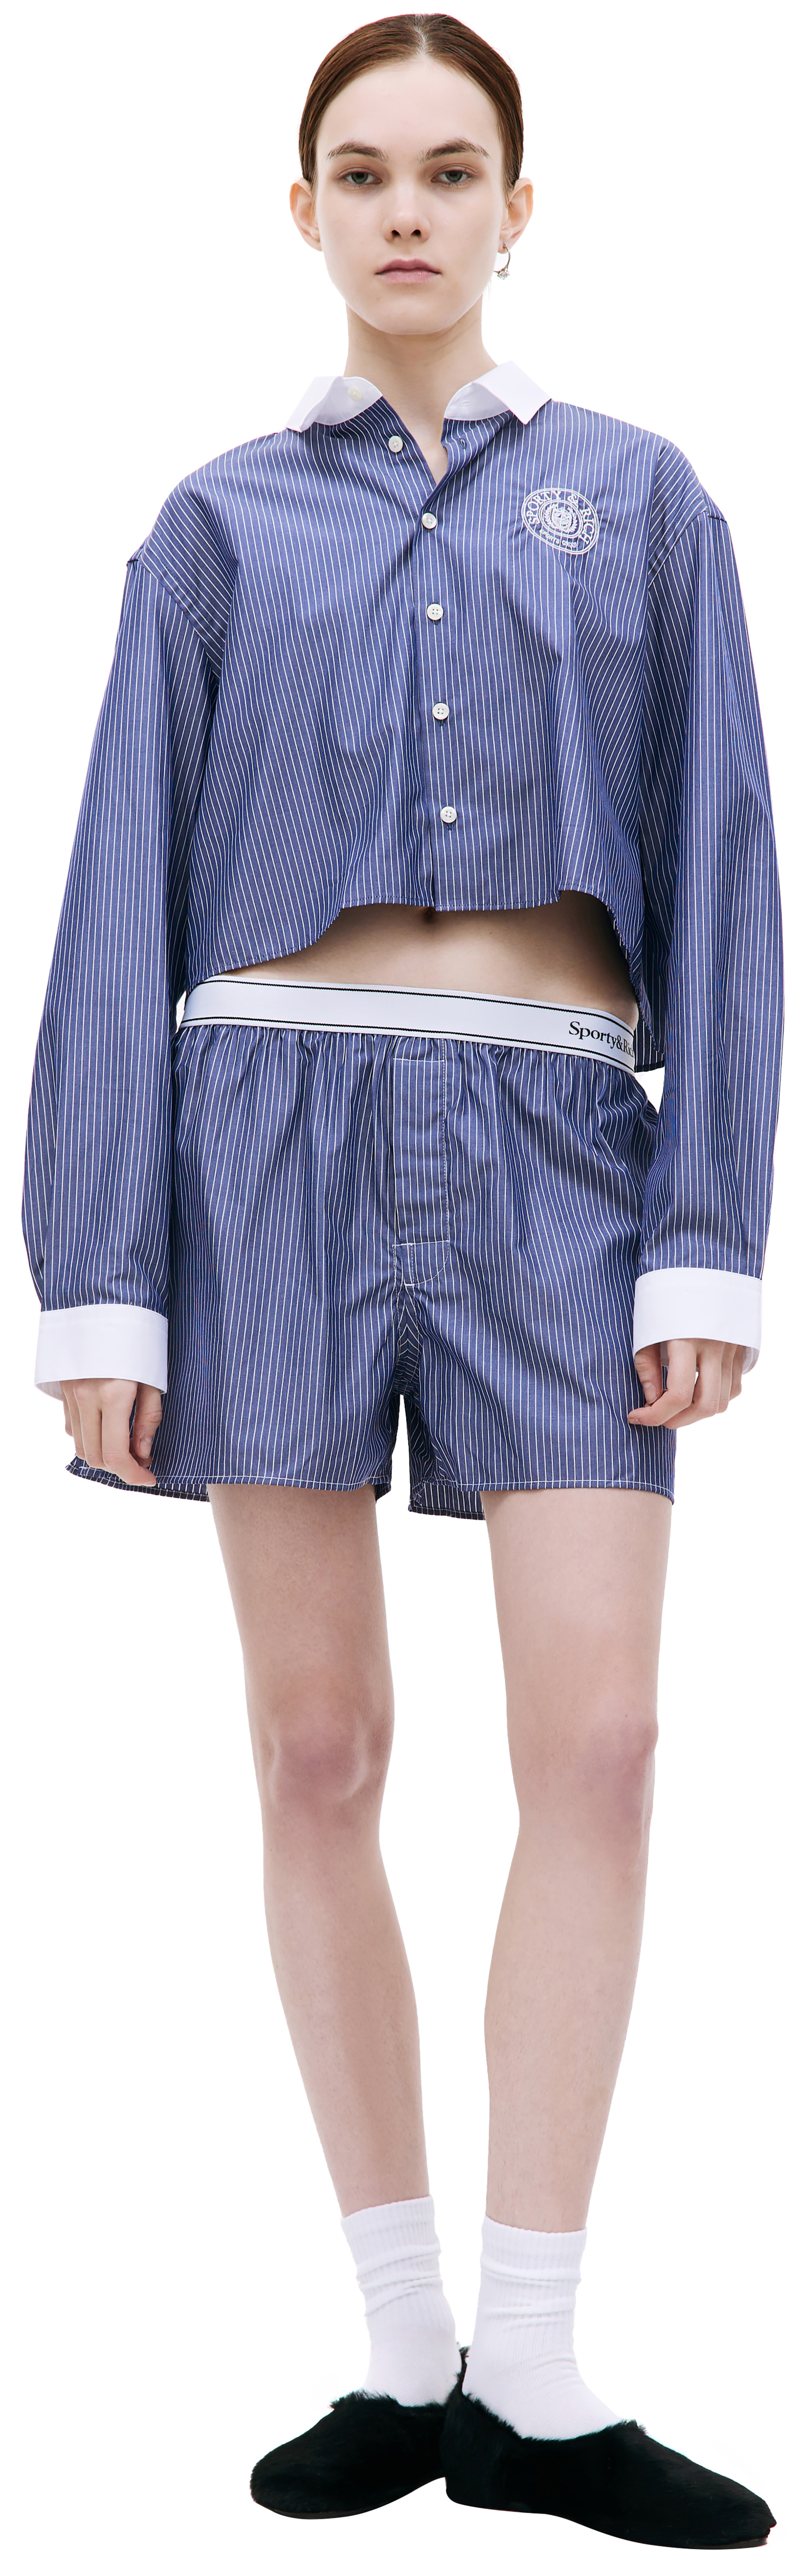 SPORTY & RICH Striped cotton shorts